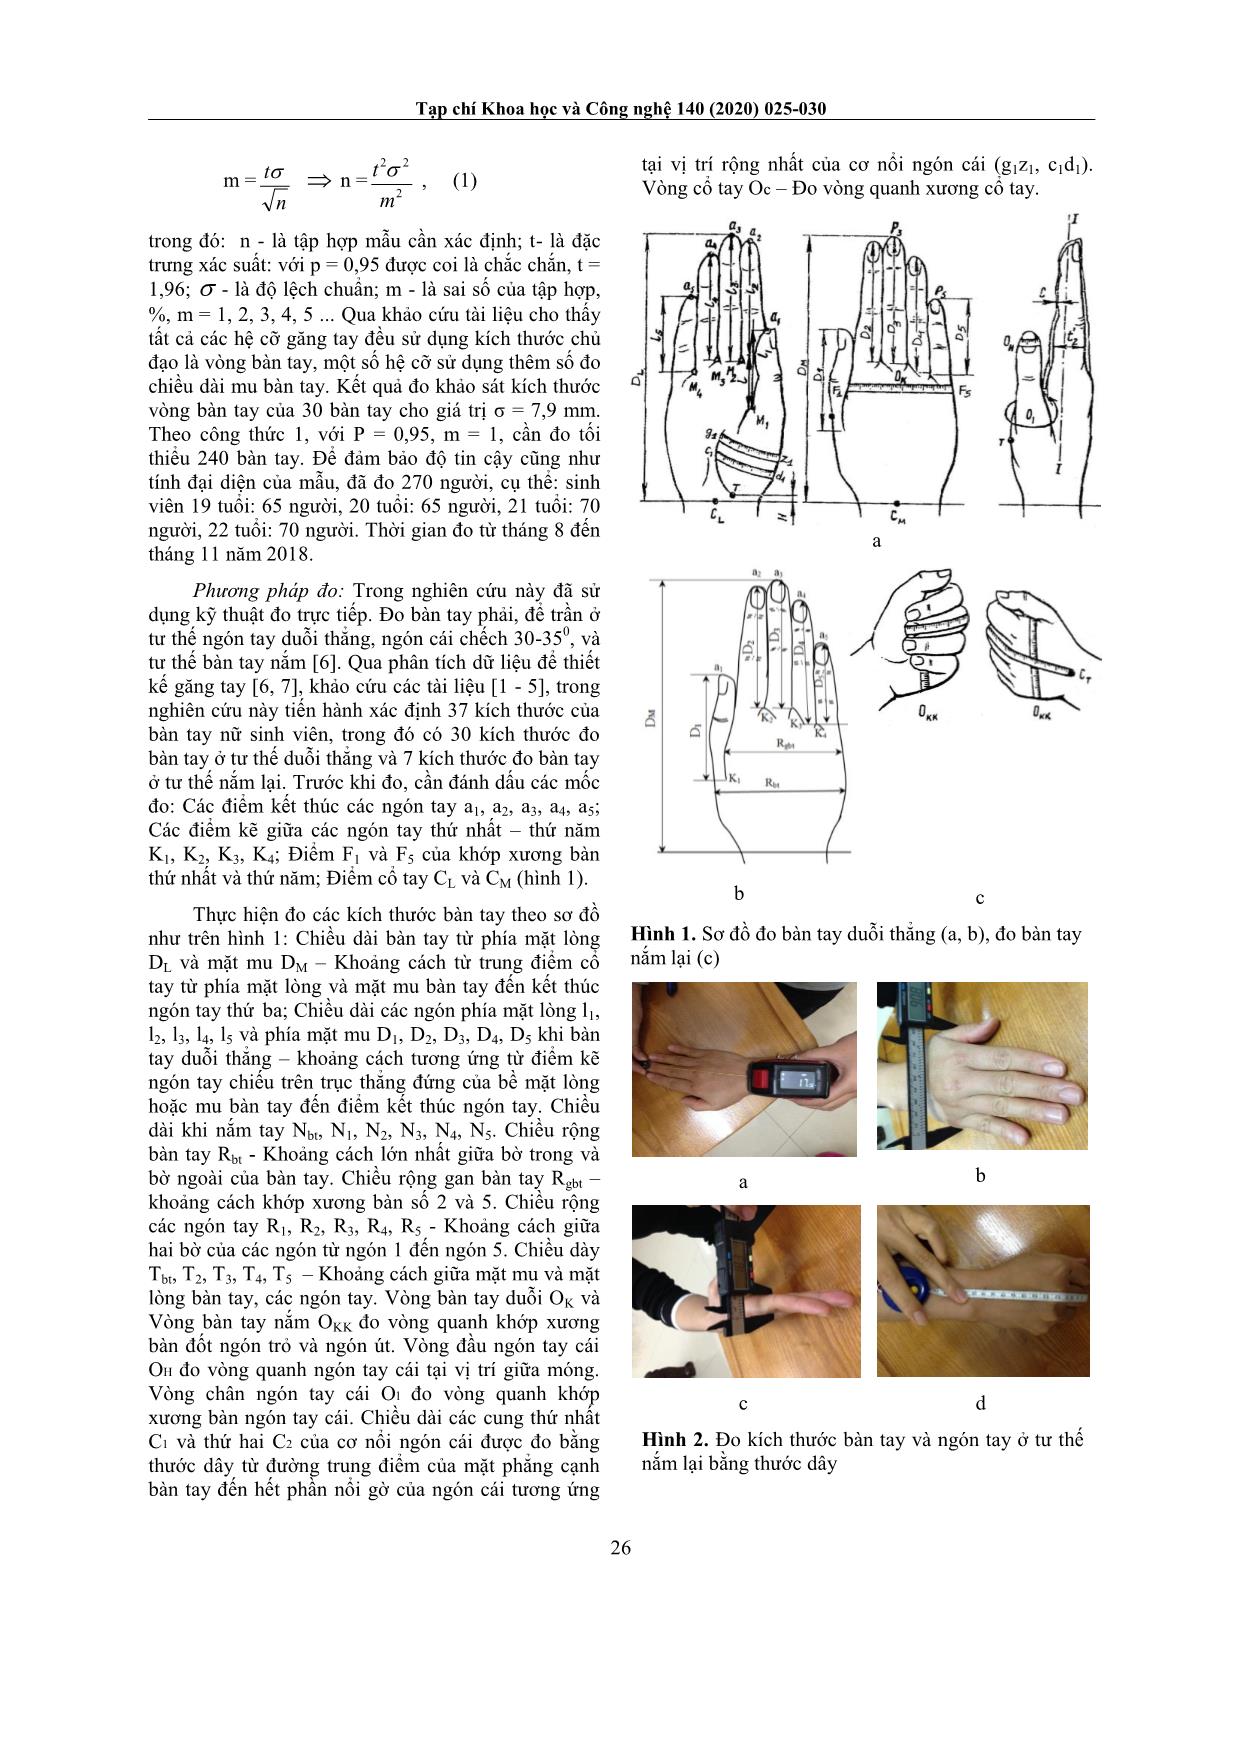 Nghiên cứu xây dựng hệ thống cỡ số bàn tay nữ sinh viên Hưng Yên phục vụ thiết kế găng tay da trang 2